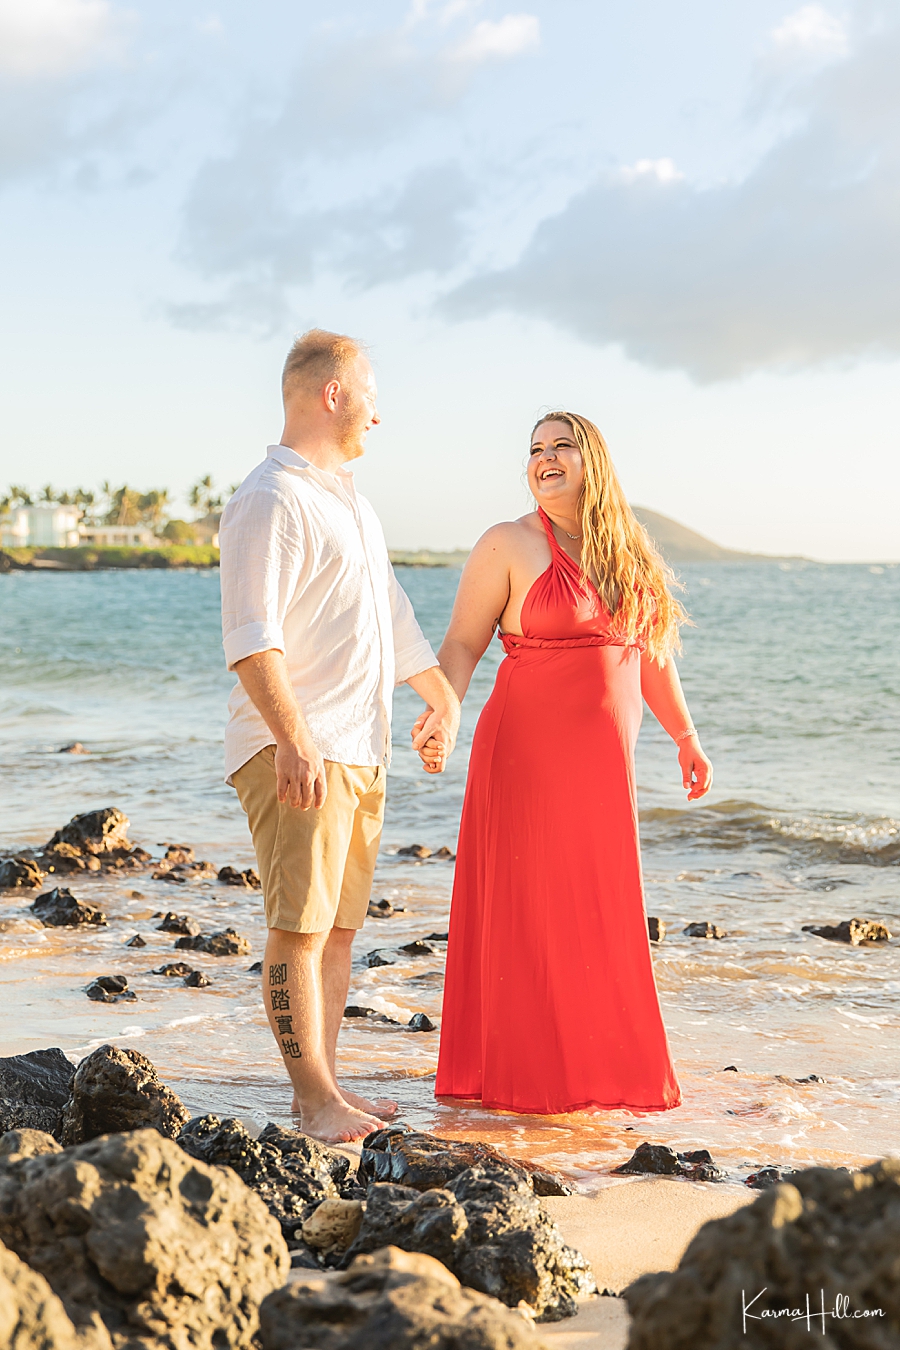 Wedding portraits in Maui
